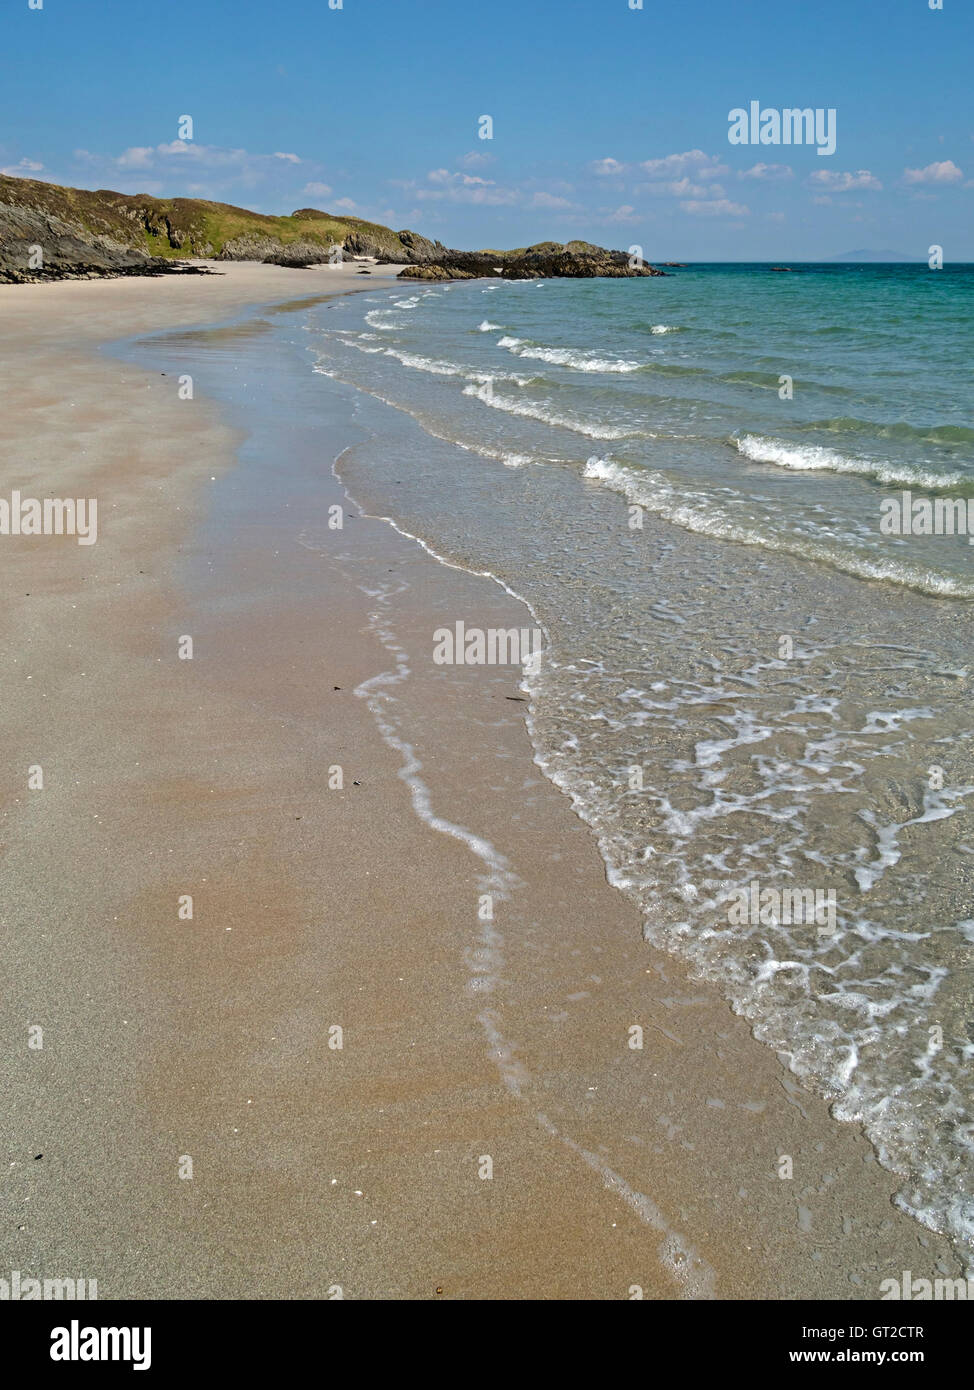 Gloriosa deserta spiaggia sabbiosa vicino alla baia di cavo, Traigh un Eacail sul telecomando delle Ebridi Isola di Colonsay, Scotland, Regno Unito. Foto Stock